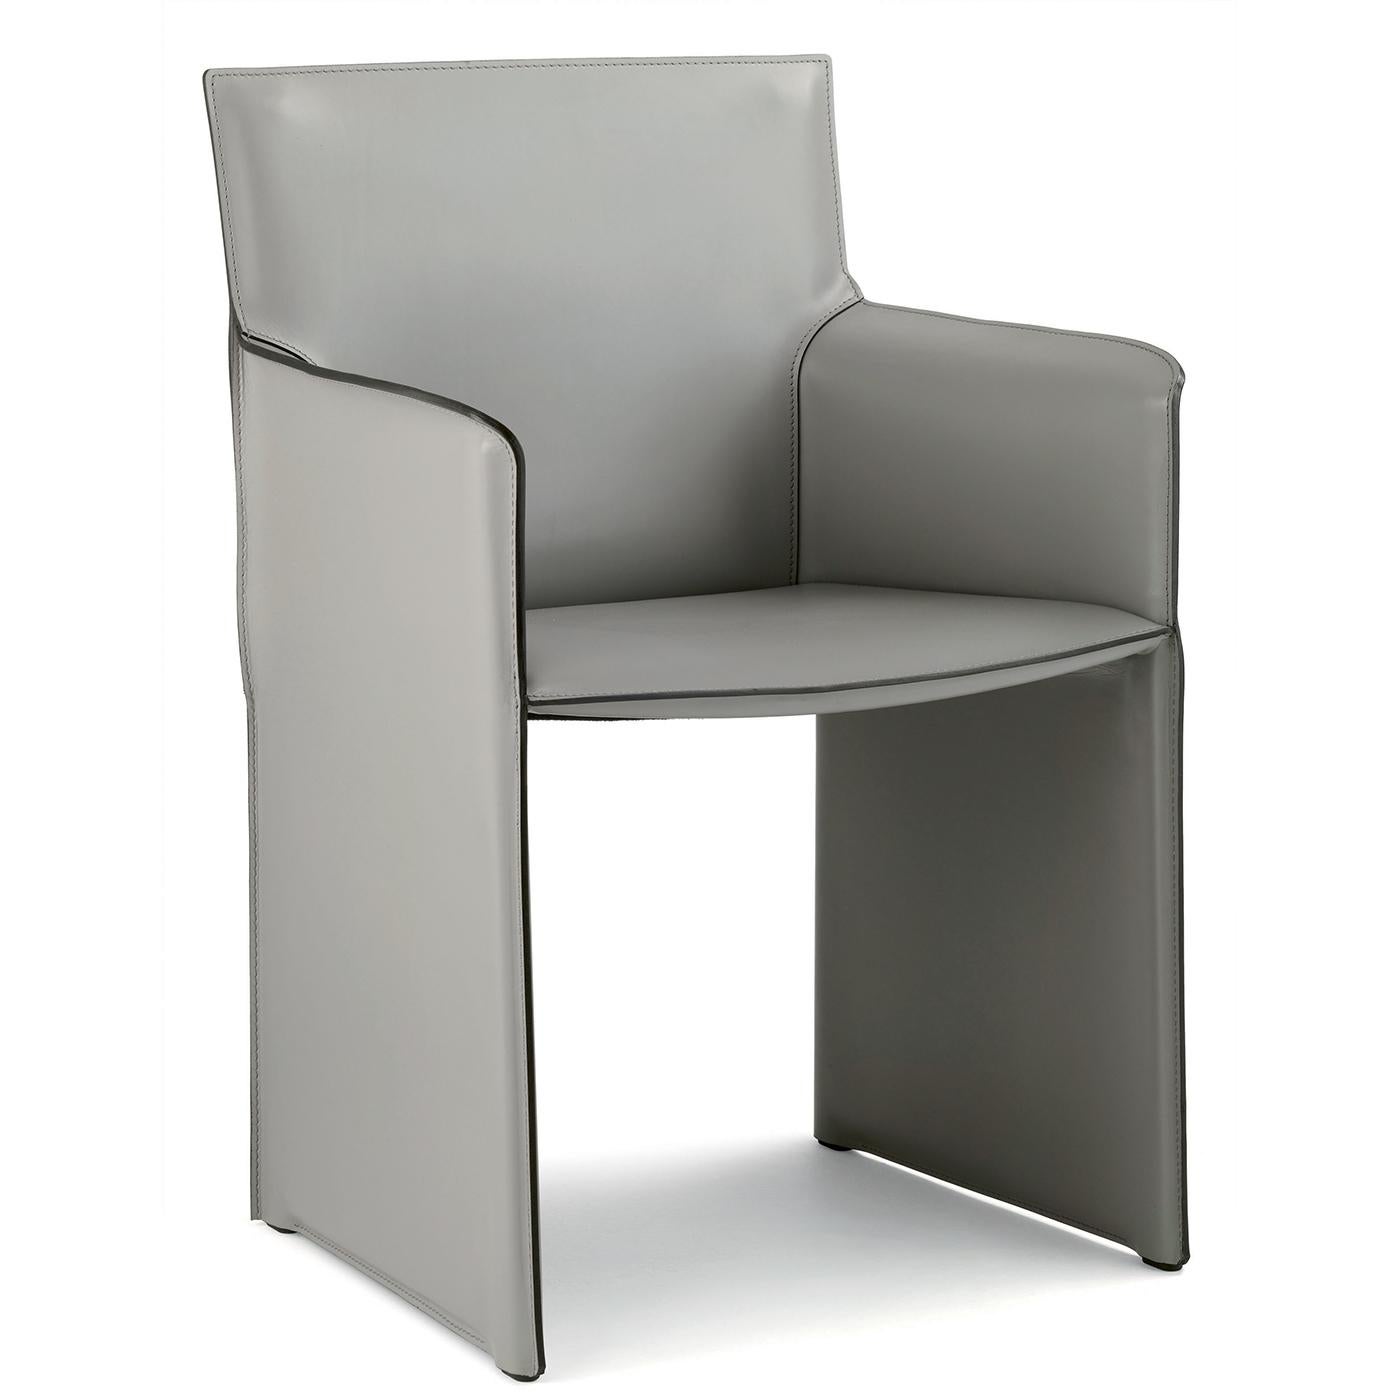 L'aspect minimaliste de ce fauteuil est mis en valeur par son revêtement en cuir de couleur ardoise. Le style comporte également un cadre en acier tubulaire et une lèchefrite en métal recouverte d'un tissu technique noir. Sa structure robuste et